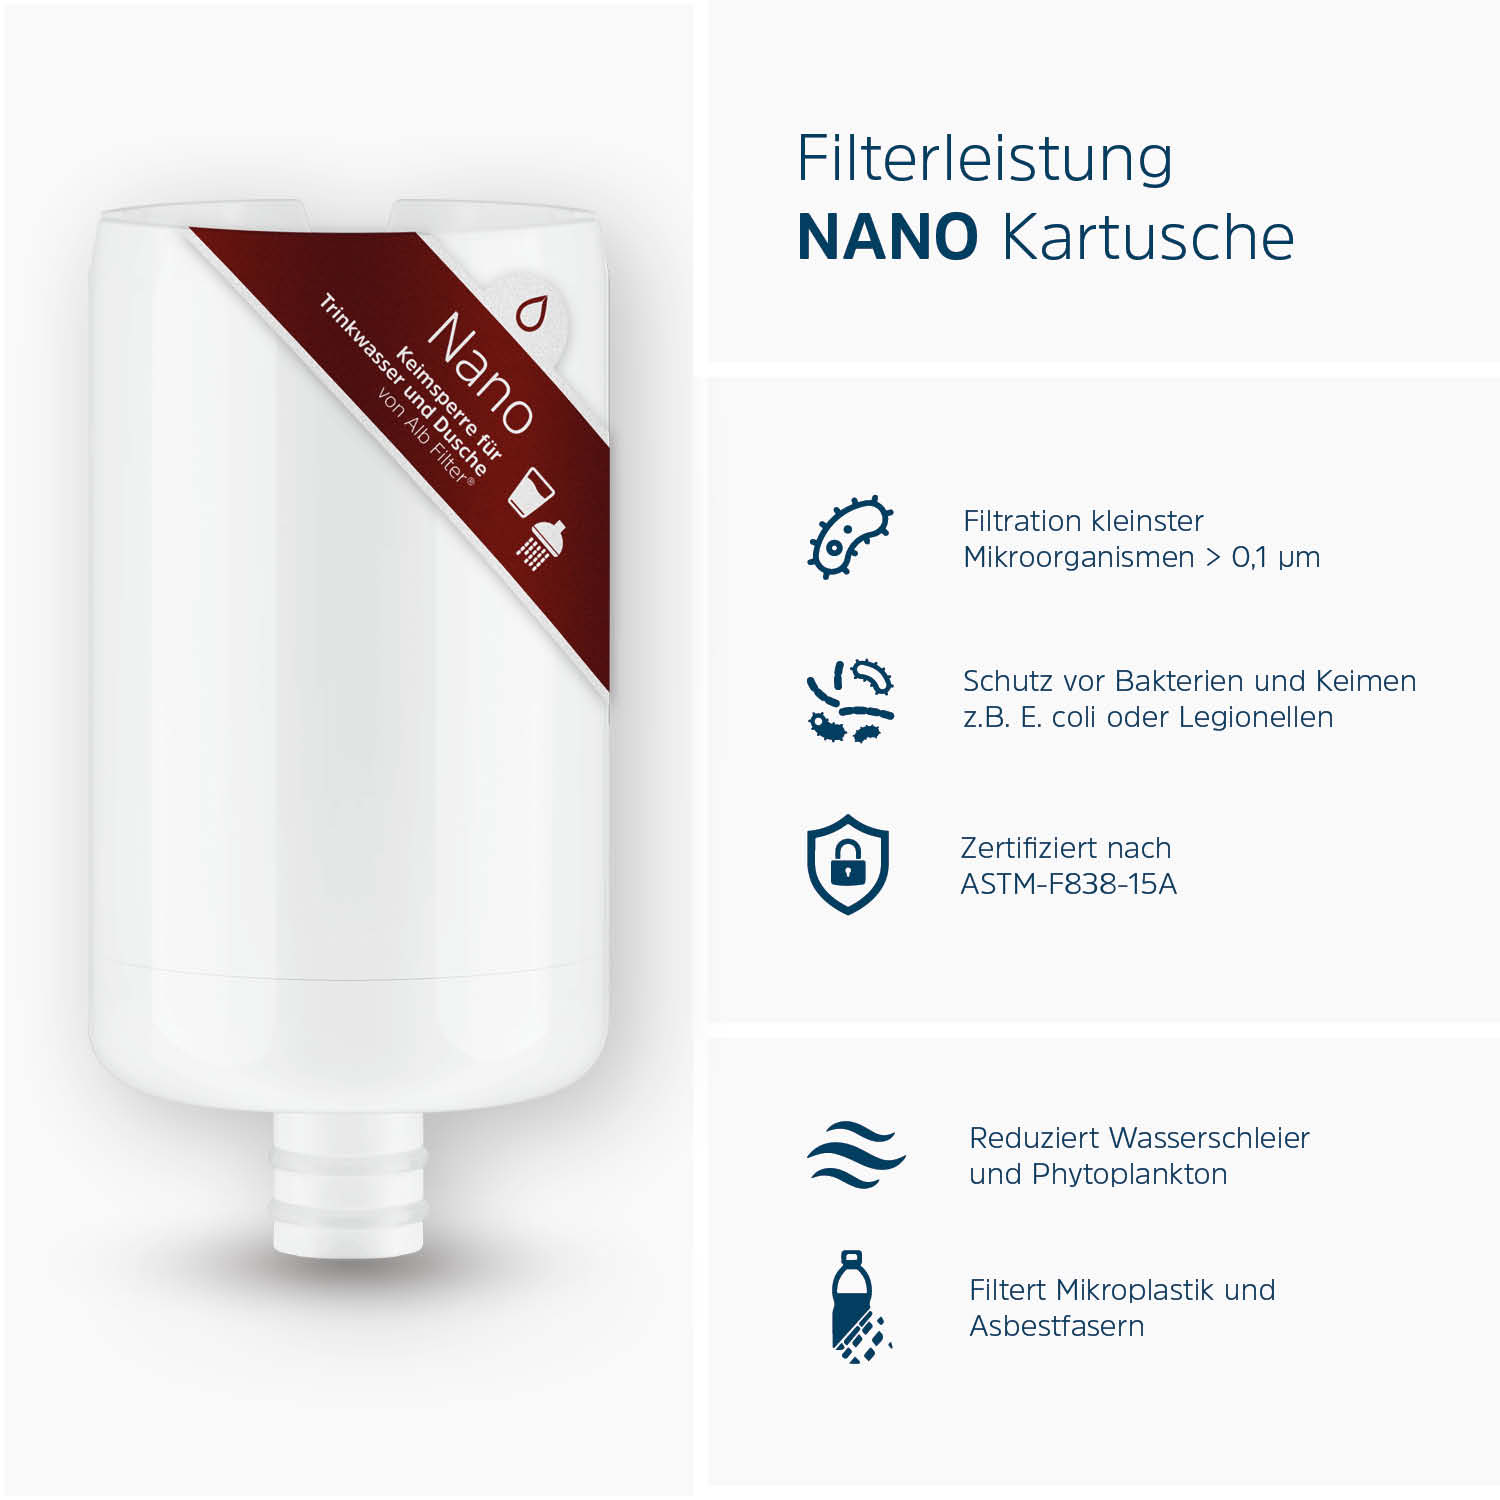 Alb Filter® TRAVEL Nano Trinkwasserfilter Keimsperre für Festeinbau, Silber